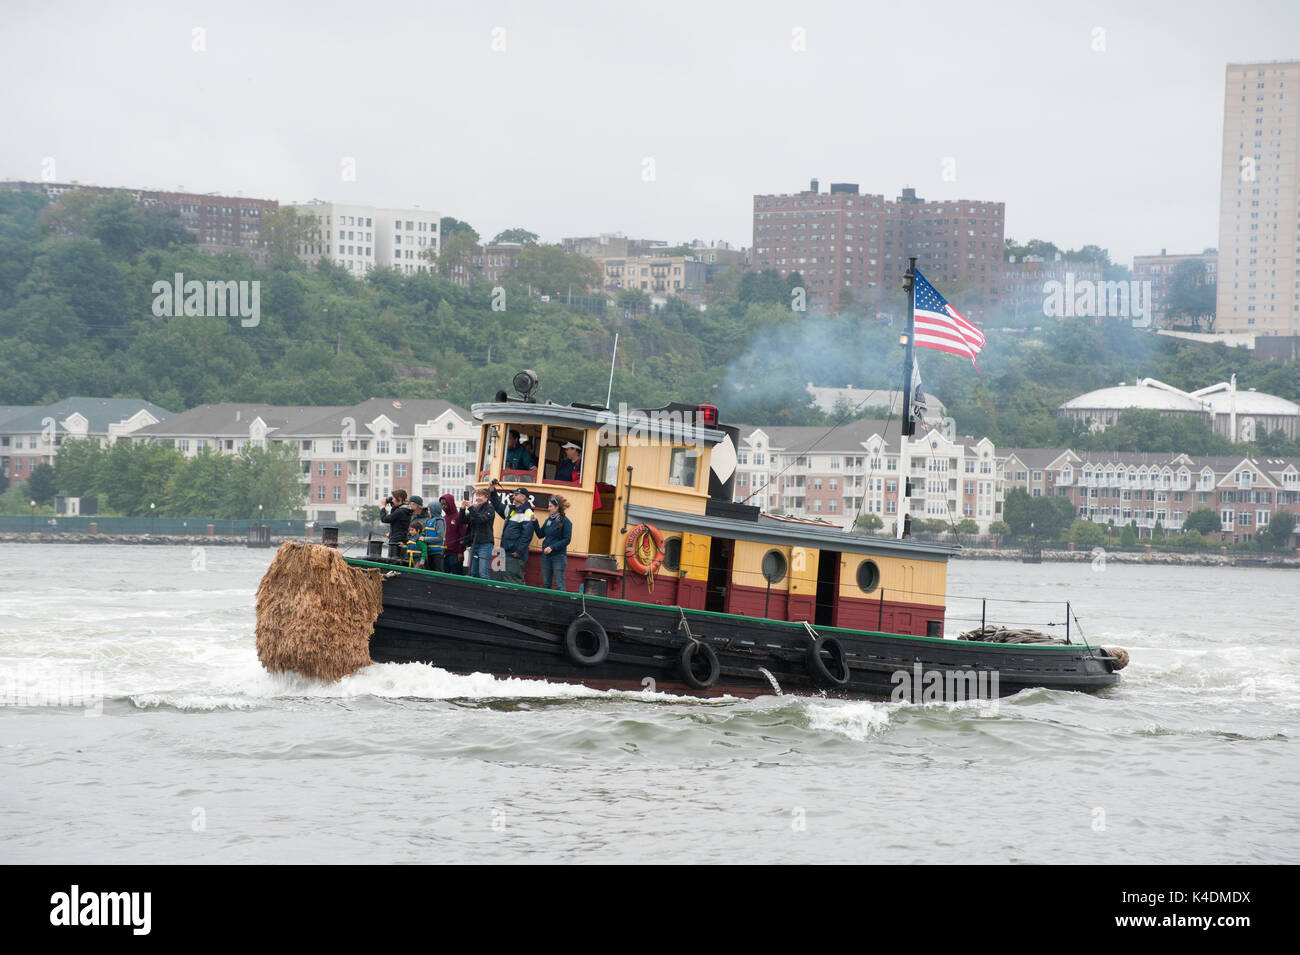 Schubschiff der South Street Seaport Museum, W.O. Decker, der in der jährlichen tugboat Rennen und den Wettbewerb auf dem Hudson River teilgenommen. Sept. 3, 2017. Stockfoto